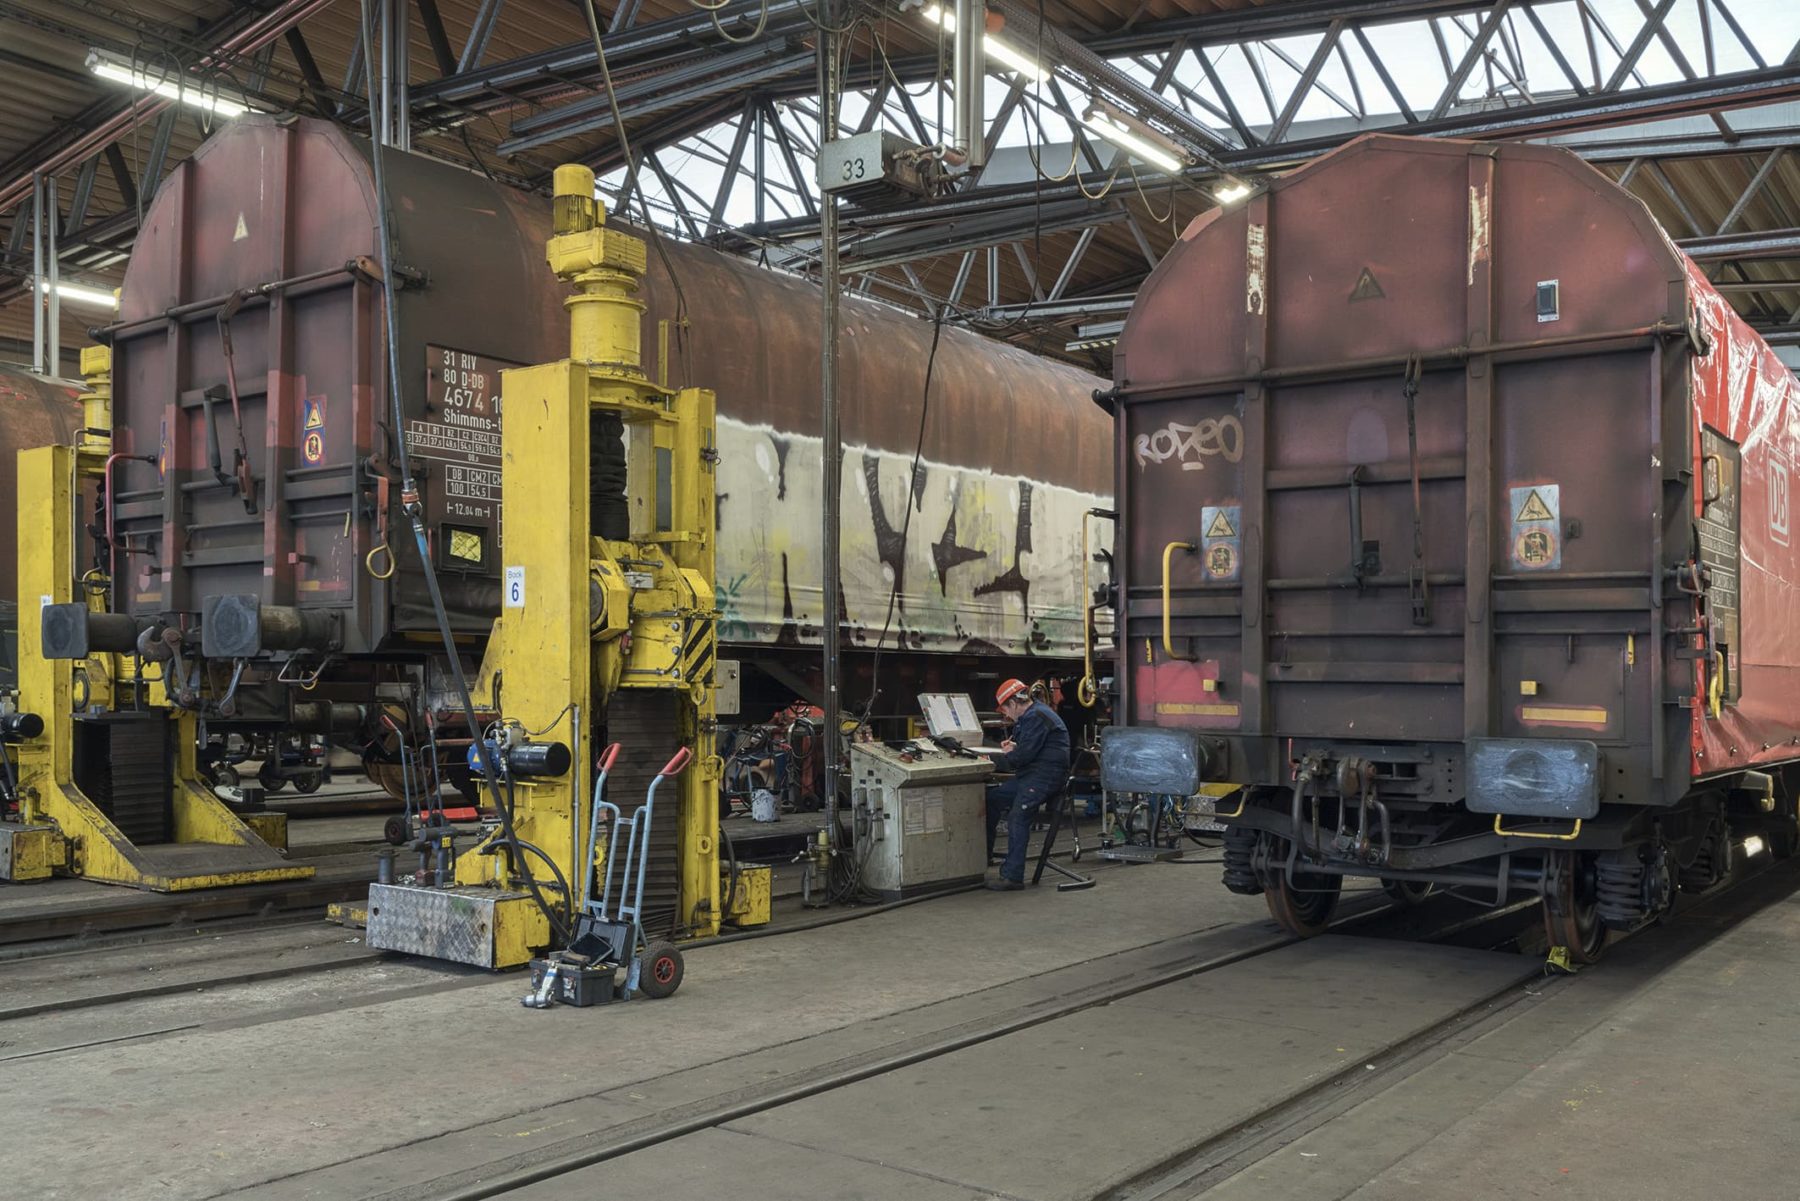 Güterwaggons in einer Halle, einer der Waggons steht auf einer Hebebühne aus gelben Stahlträgern